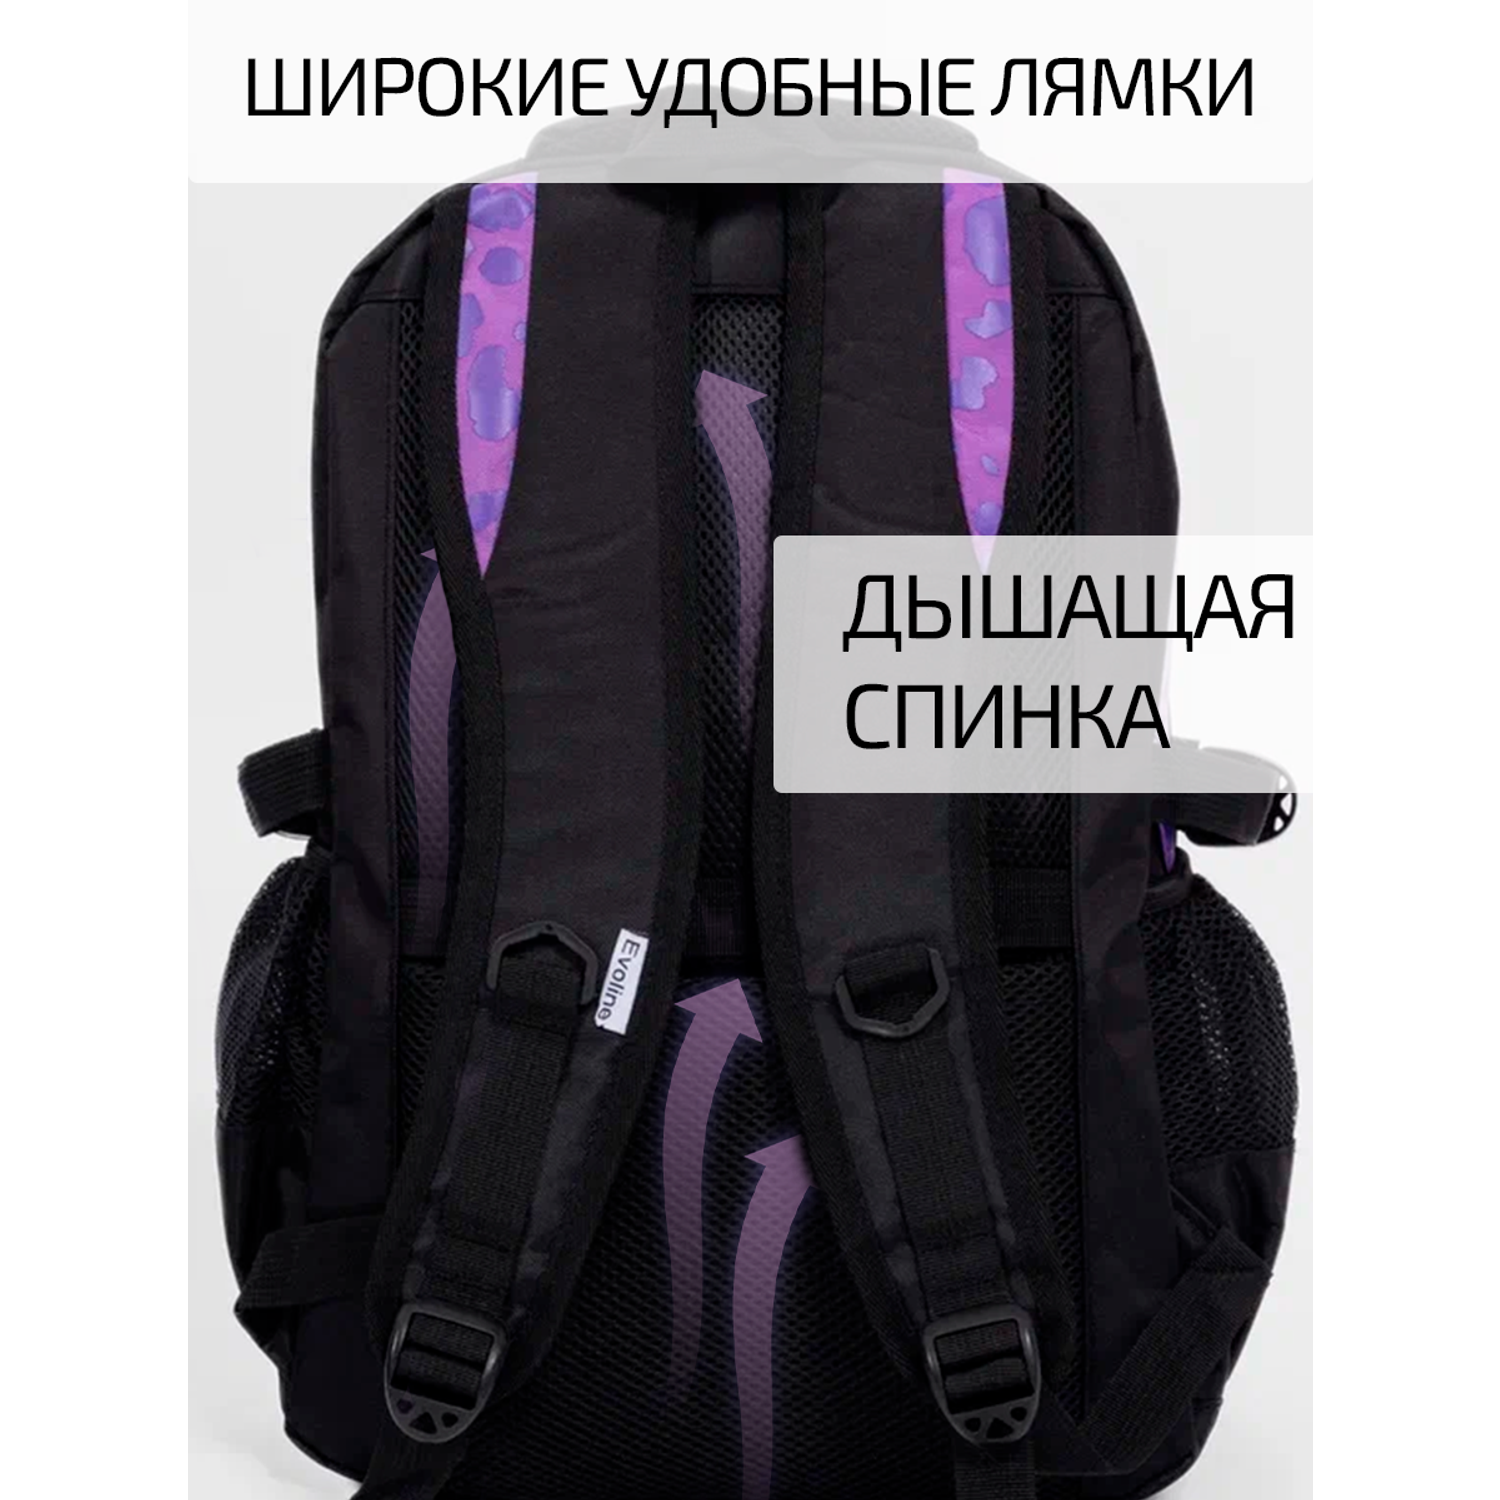 Рюкзак школьный Evoline черный фиолетовый леопардо EVO-155 - фото 8